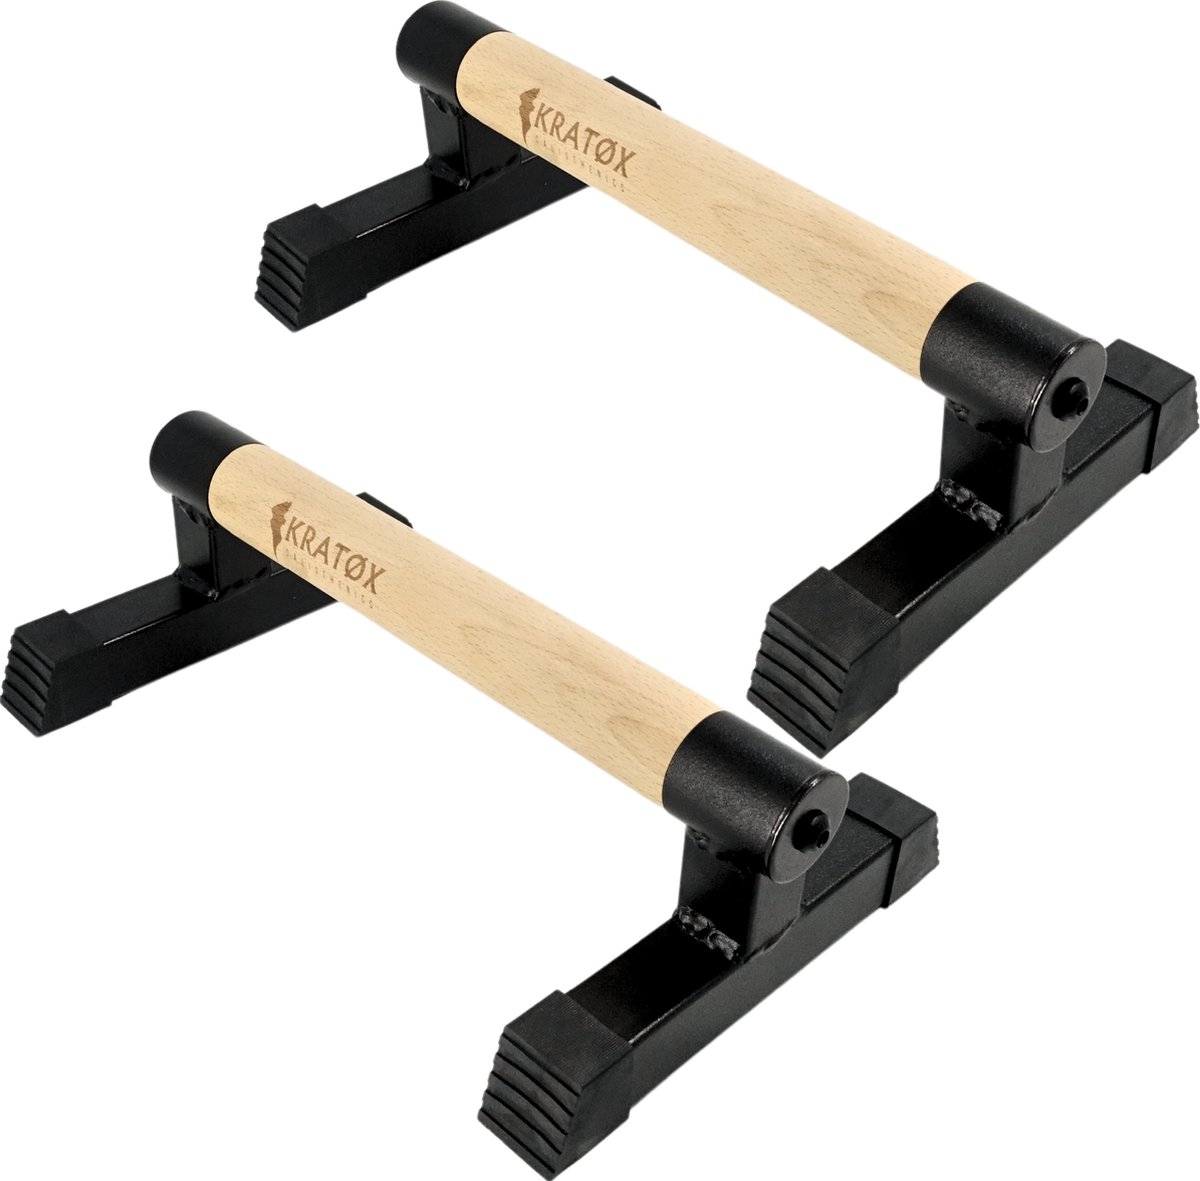 KRATØX Parallettes 33 cm Push up Bars - Calisthenics - Push up grips - parallettes hout - Opdruksteunen - Opdruk steunen - Opdrukken - Dip bars - Fitness - Crossfit - KRATØX